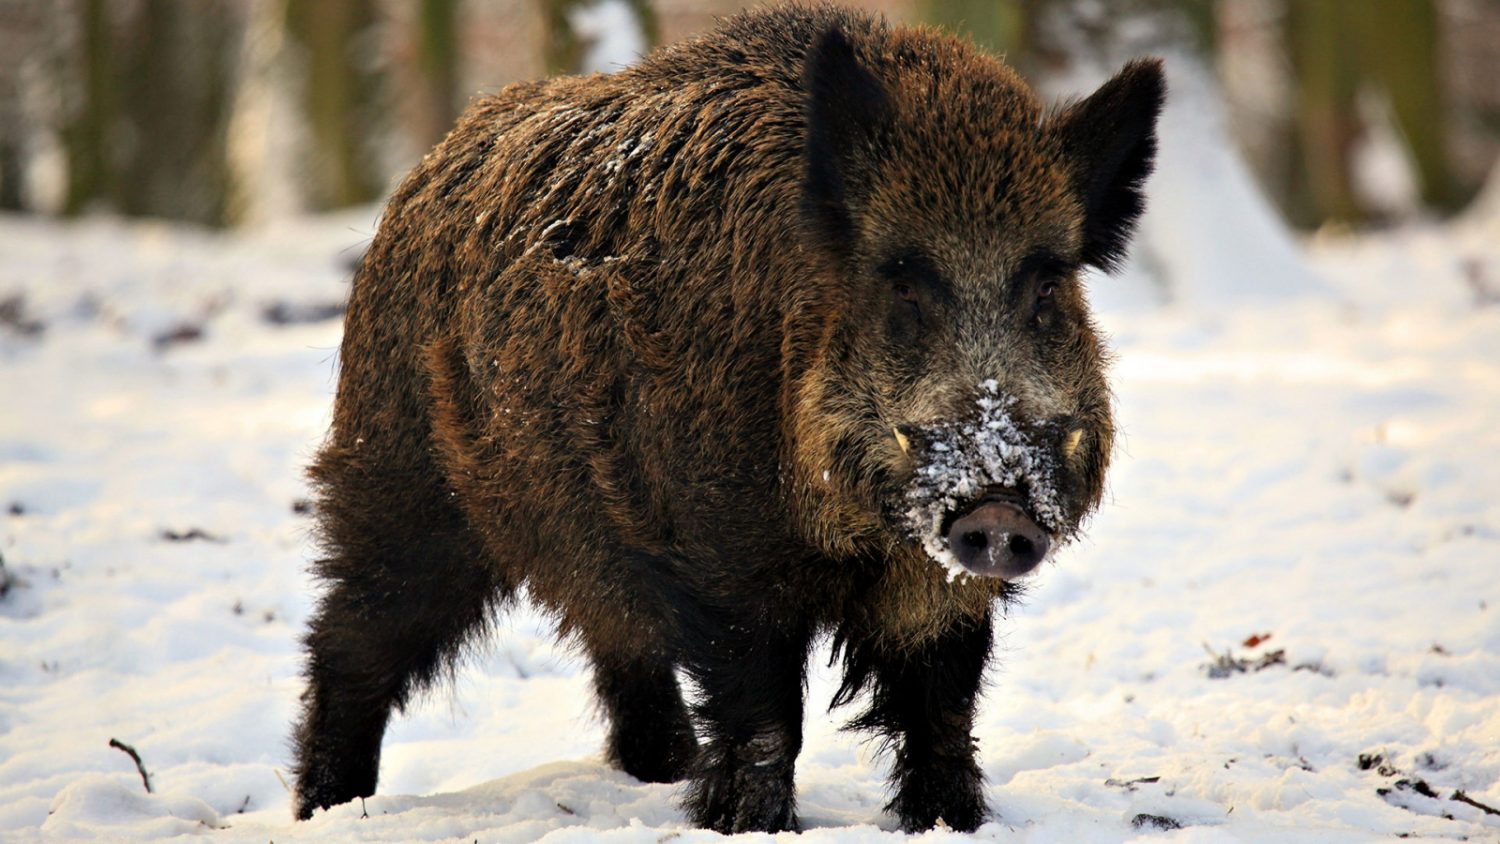 fangs_piglet_snow_winter_wild_boar_85379_1600x900